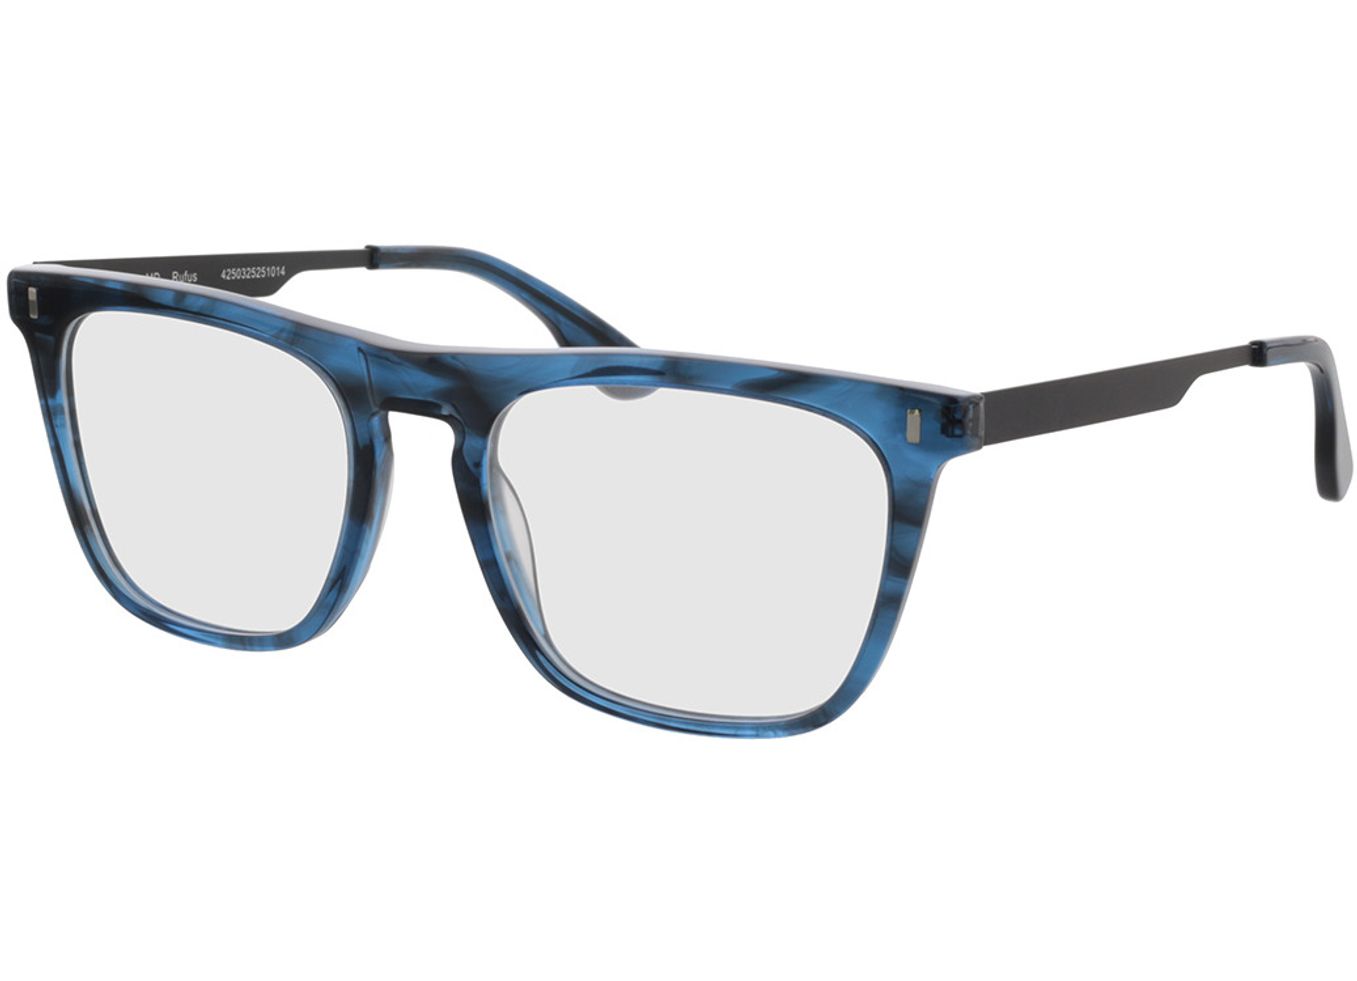 Rufus - blau-transparent Blaulichtfilter-Brille, Vollrand, Eckig von Brille24 Collection